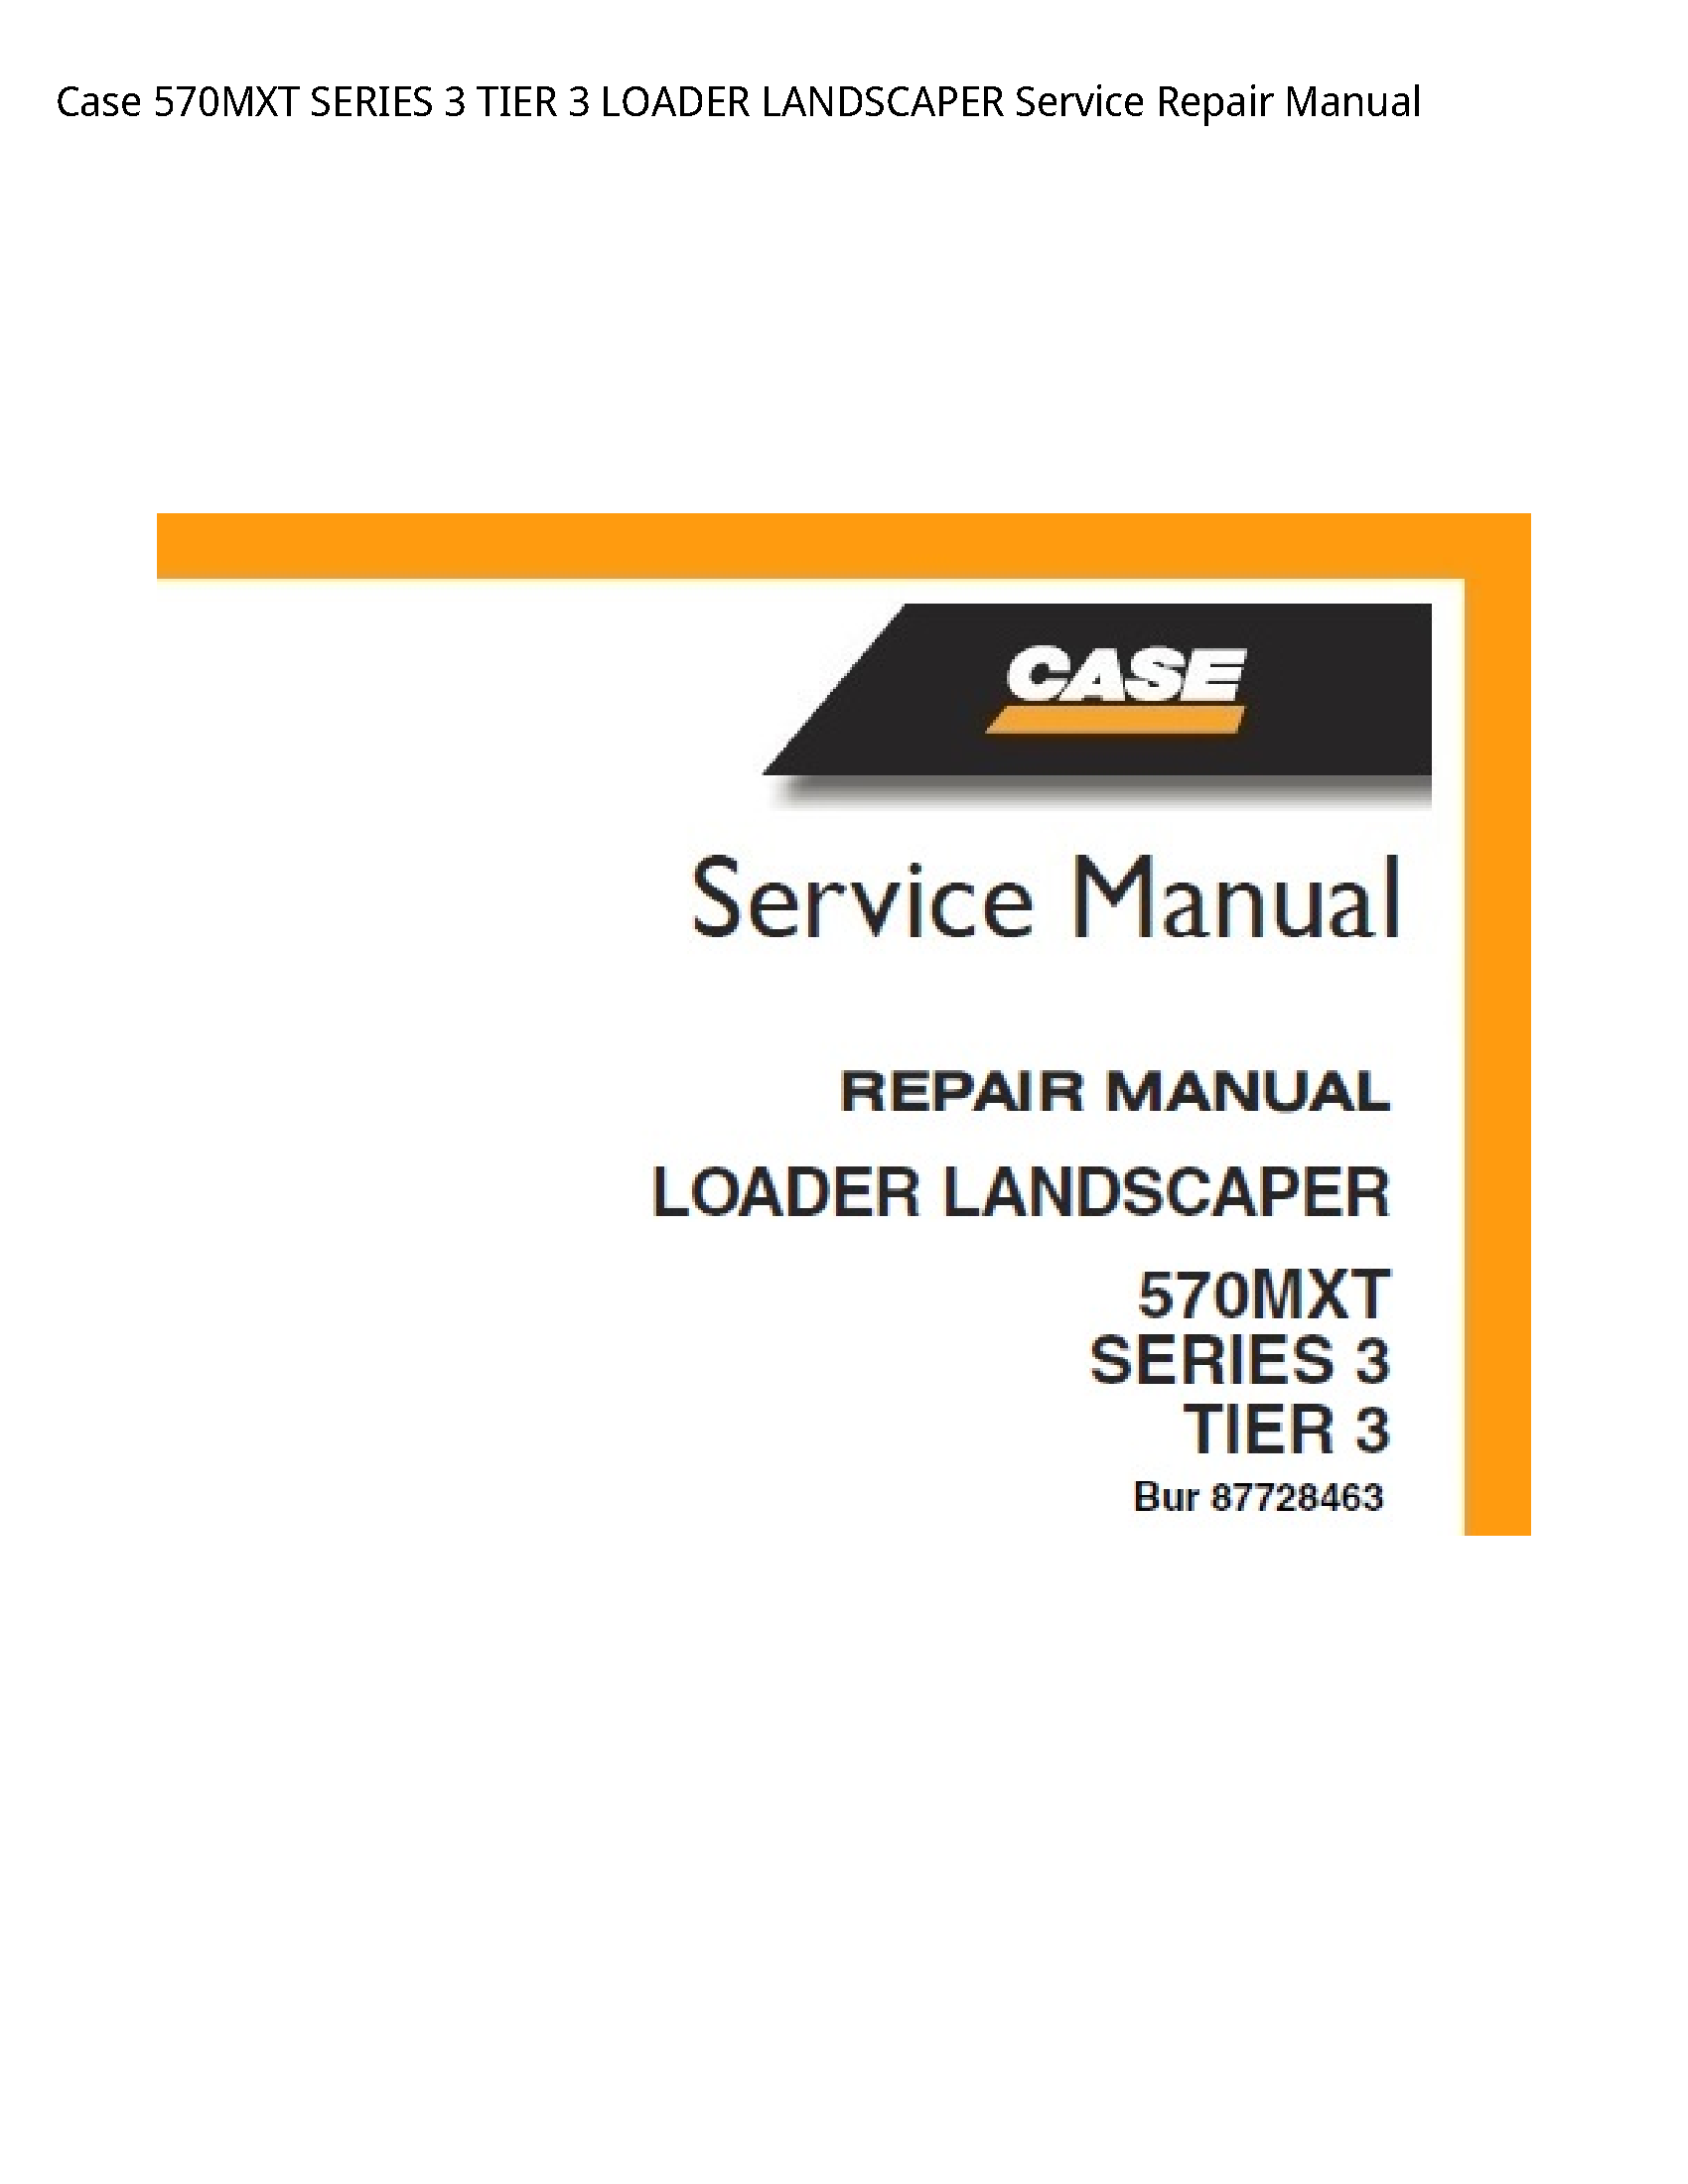 Case/Case IH 570MXT SERIES TIER LOADER LANDSCAPER manual